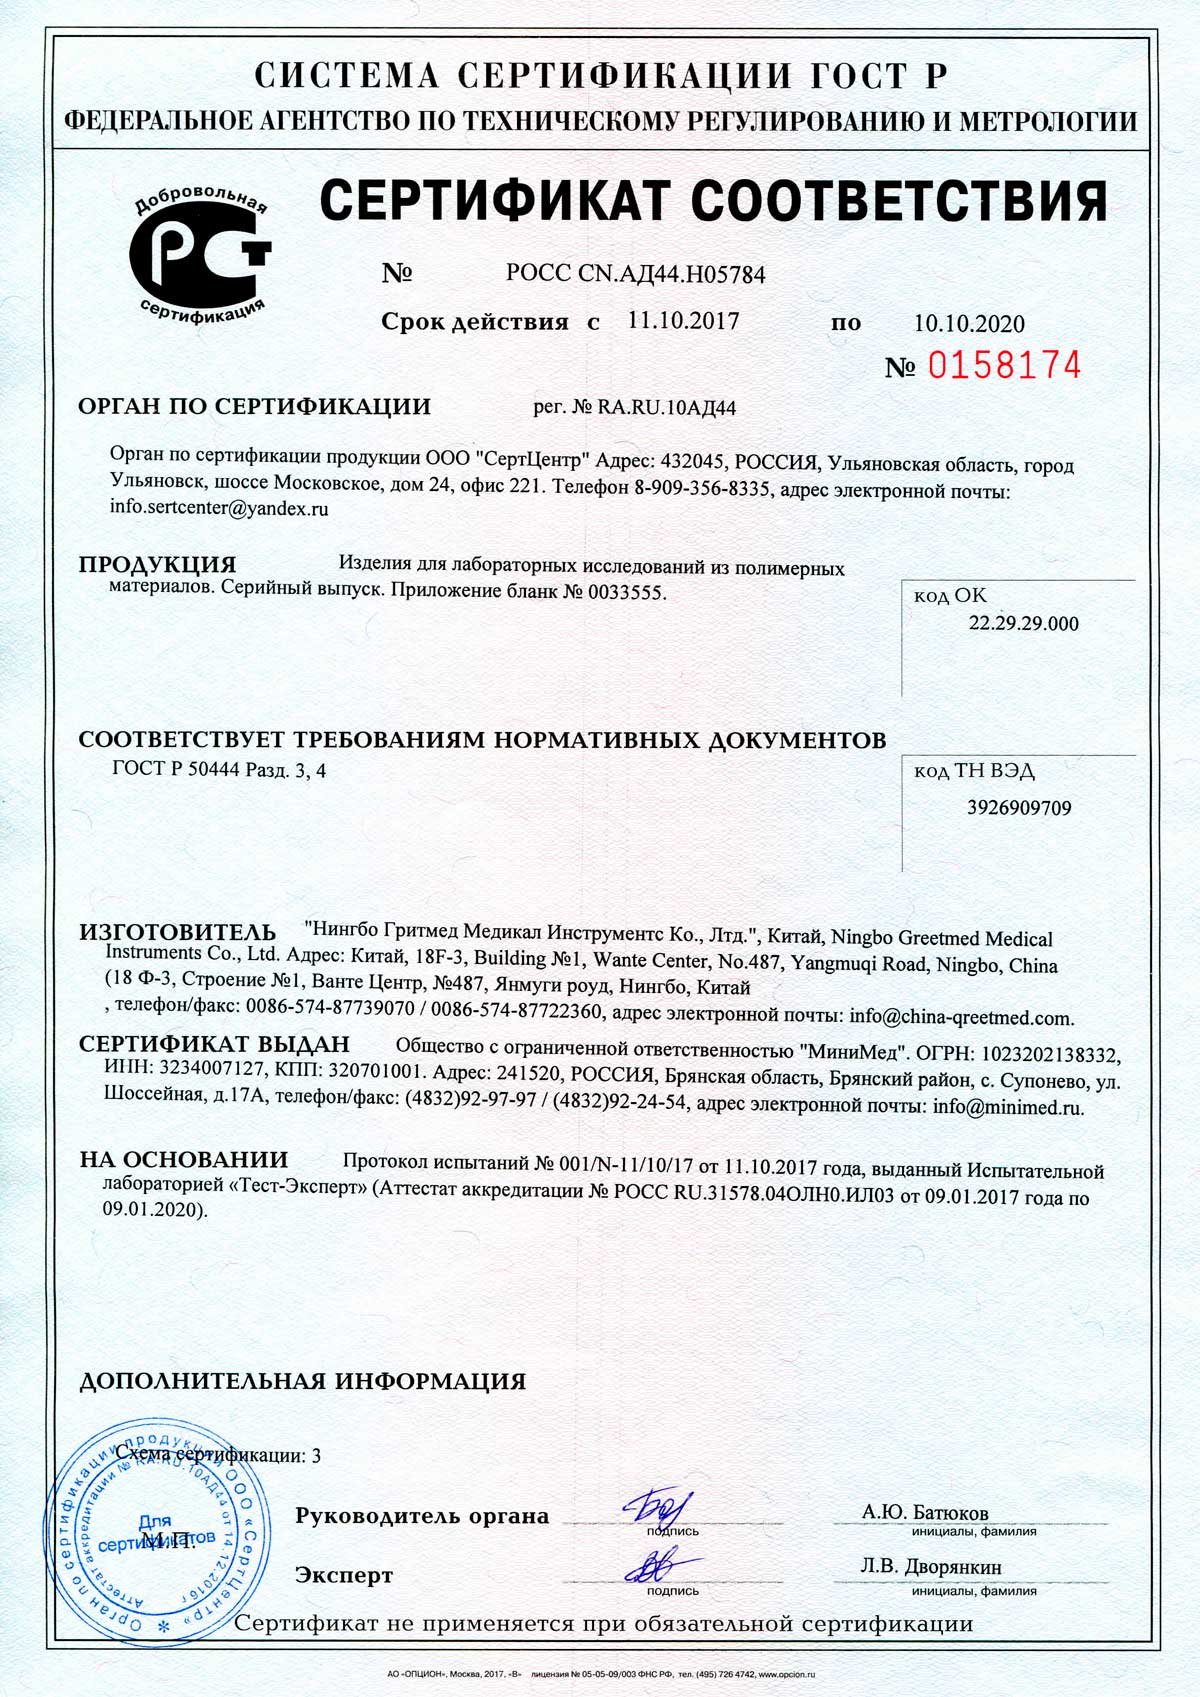 Сертификат соответствия на продукцию Гритмед без РУ-1